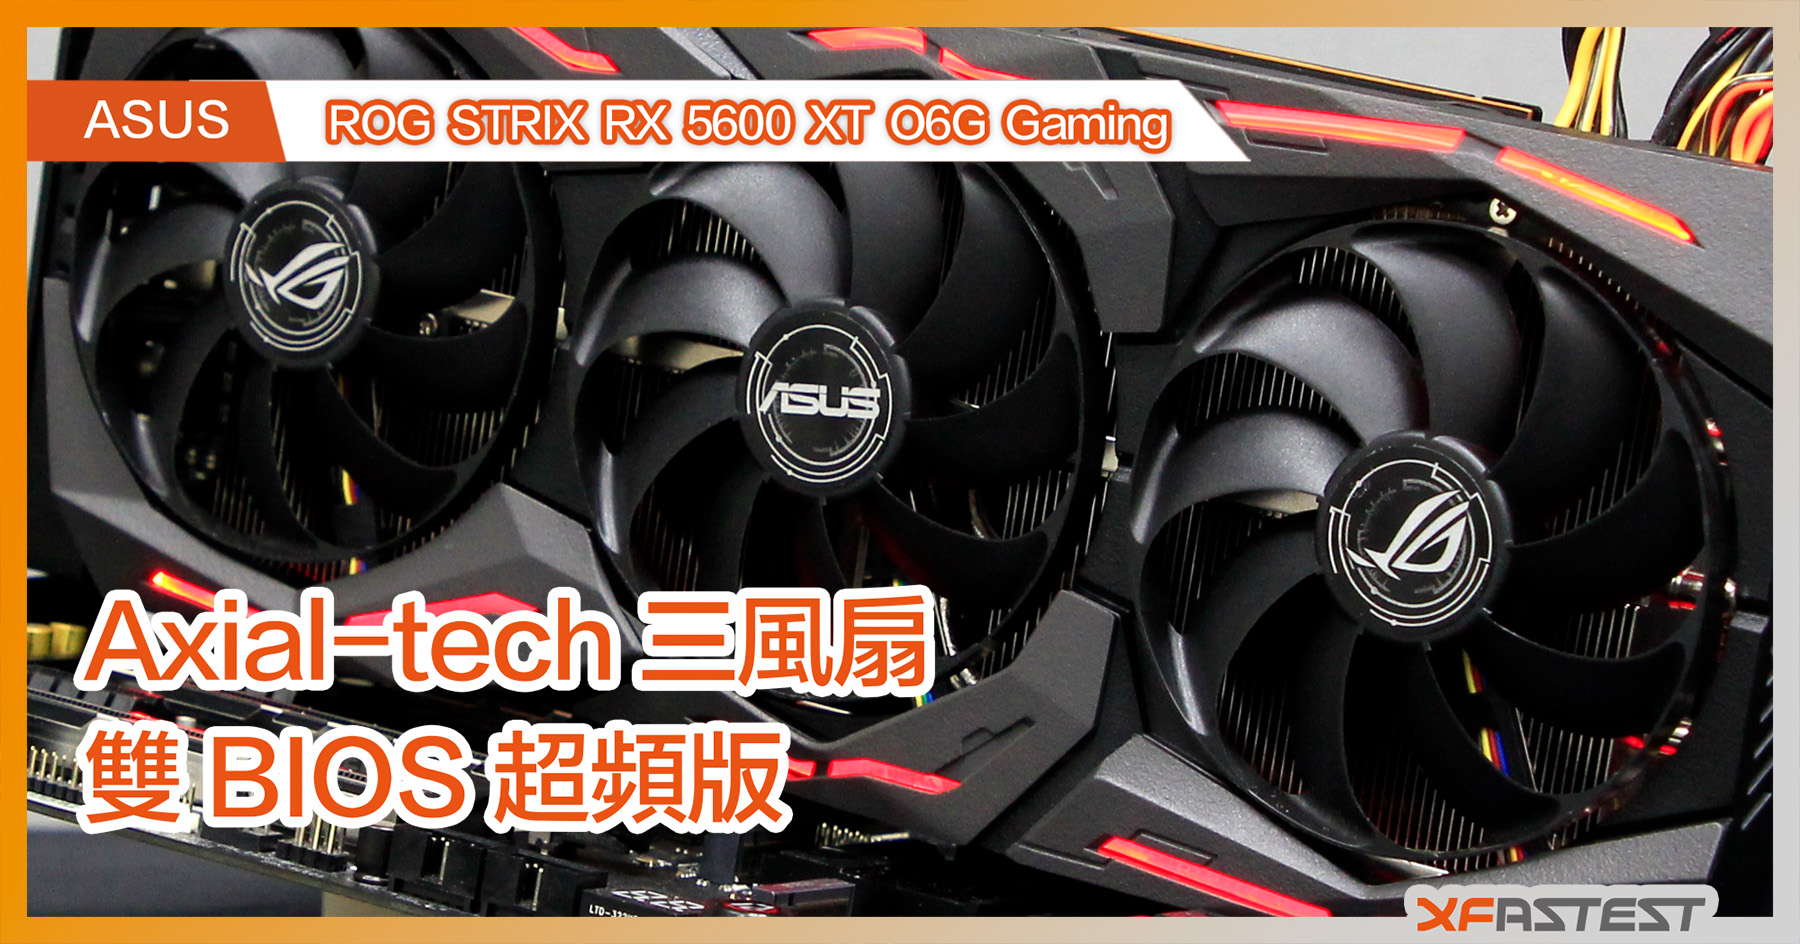 XF 開箱] ASUS ROG STRIX RX 5600 XT O6G Gaming Axial-tech 三風扇雙